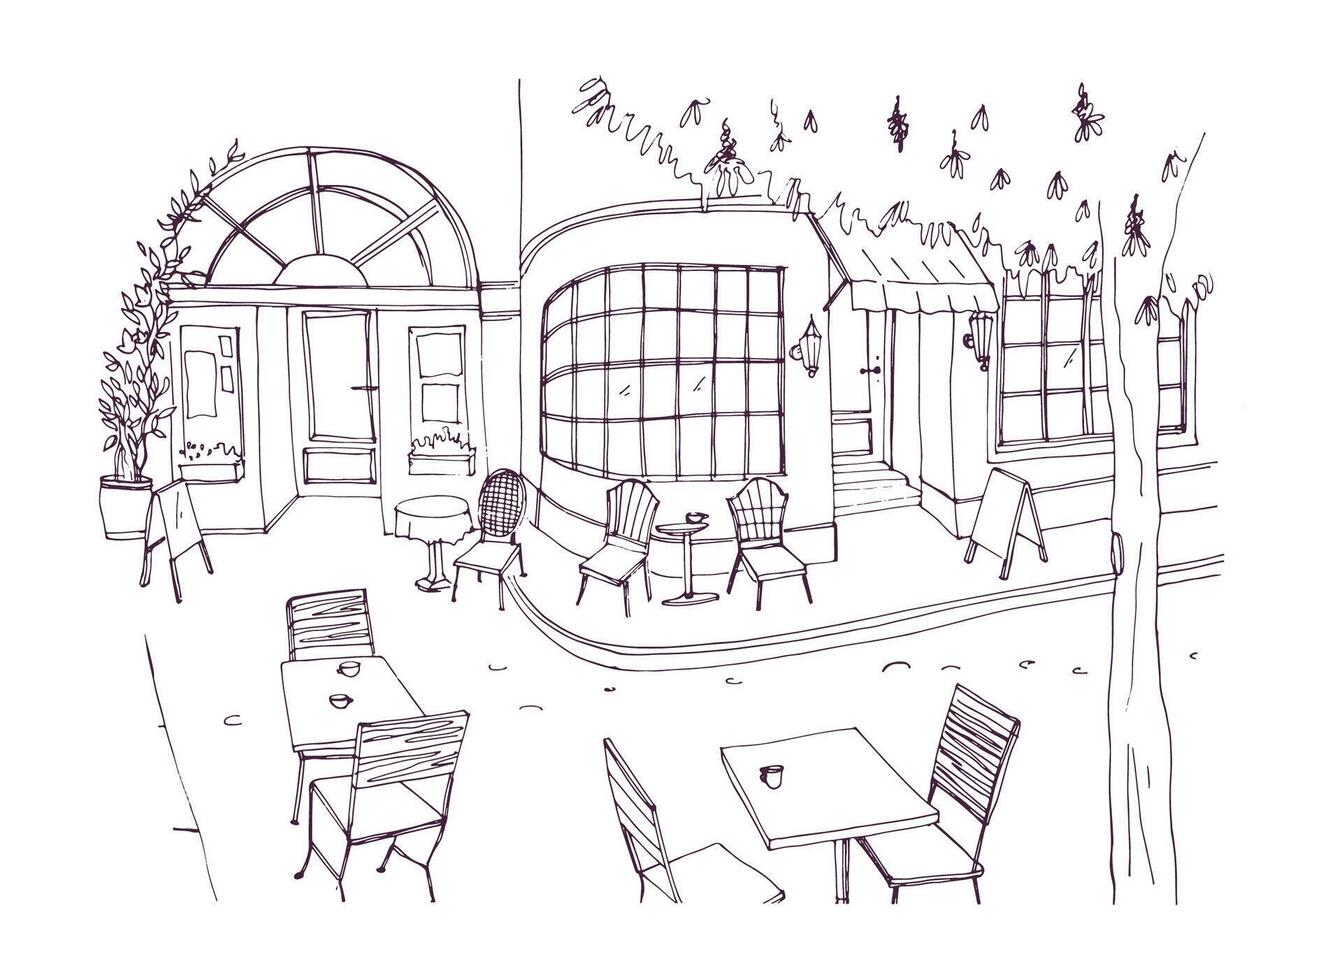 monochroom ruw schetsen van Europese buitenshuis of trottoir cafe, restaurant of koffiehuis met tafels en stoelen staand Aan stad straat. illustratie hand- getrokken in zwart en wit kleuren. vector